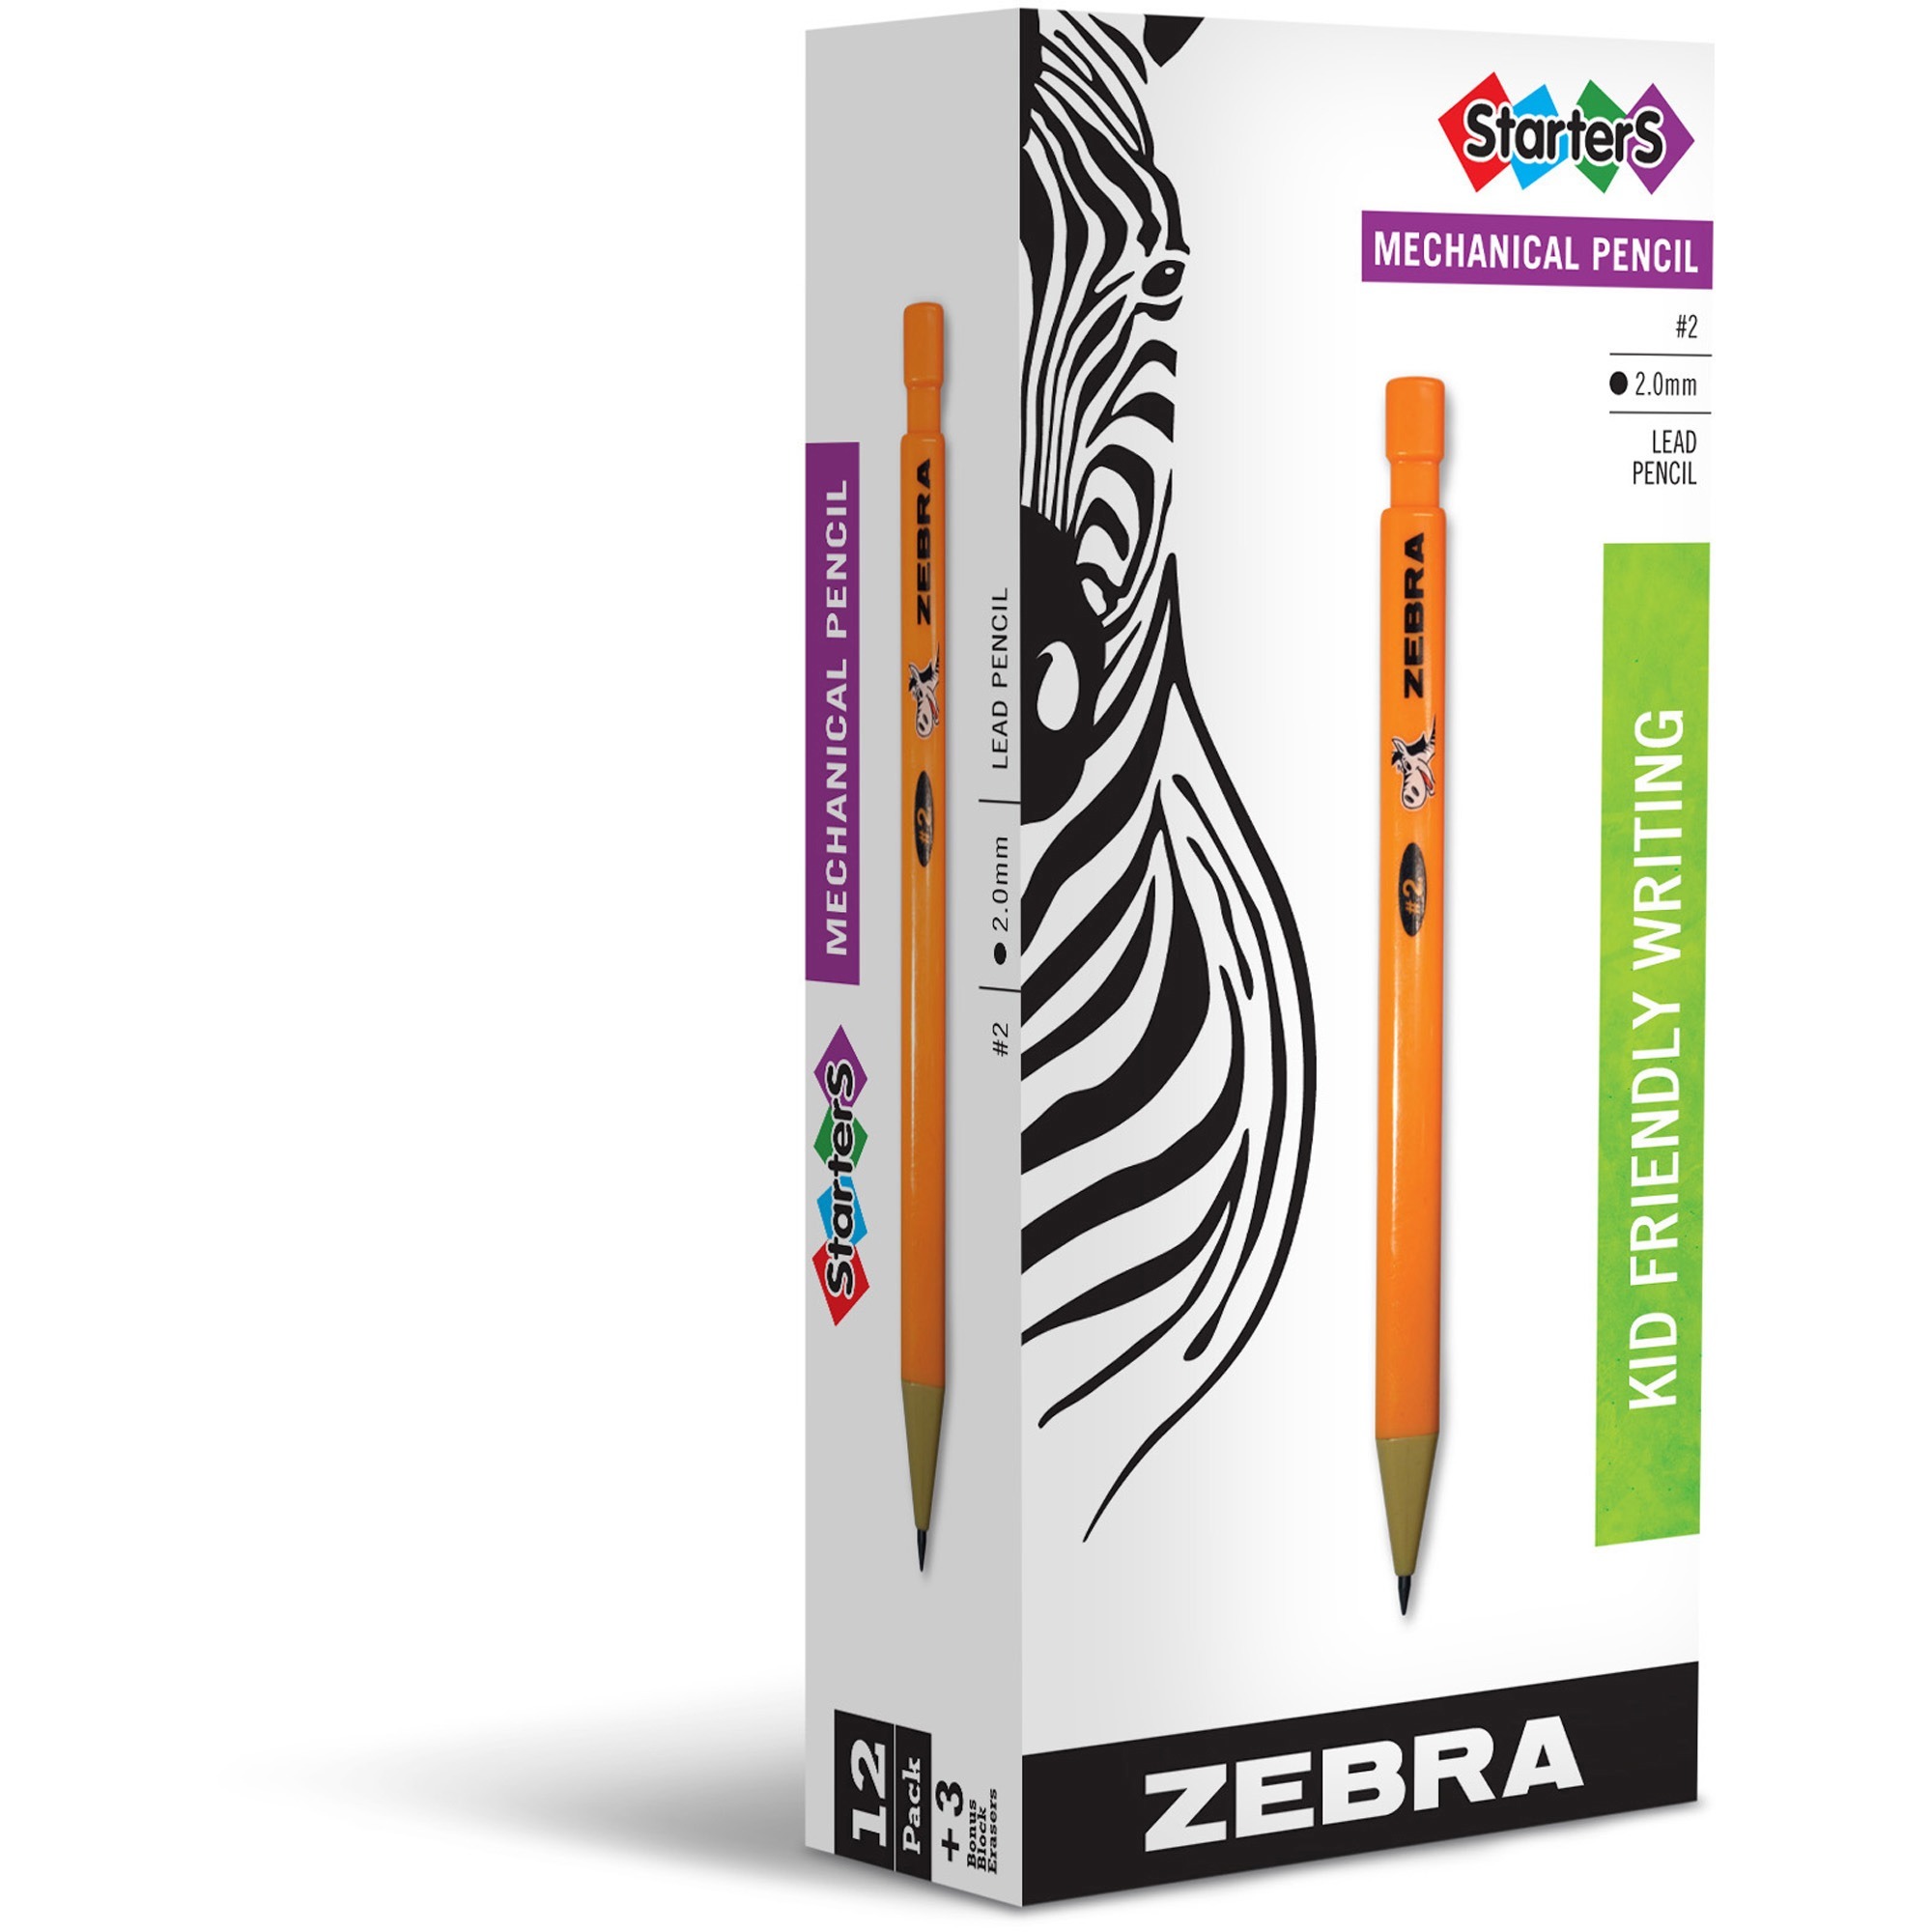 Medium Point 2 per pack ZEB88112 Zebra JK Refills for G301Gel Rollerball Pens